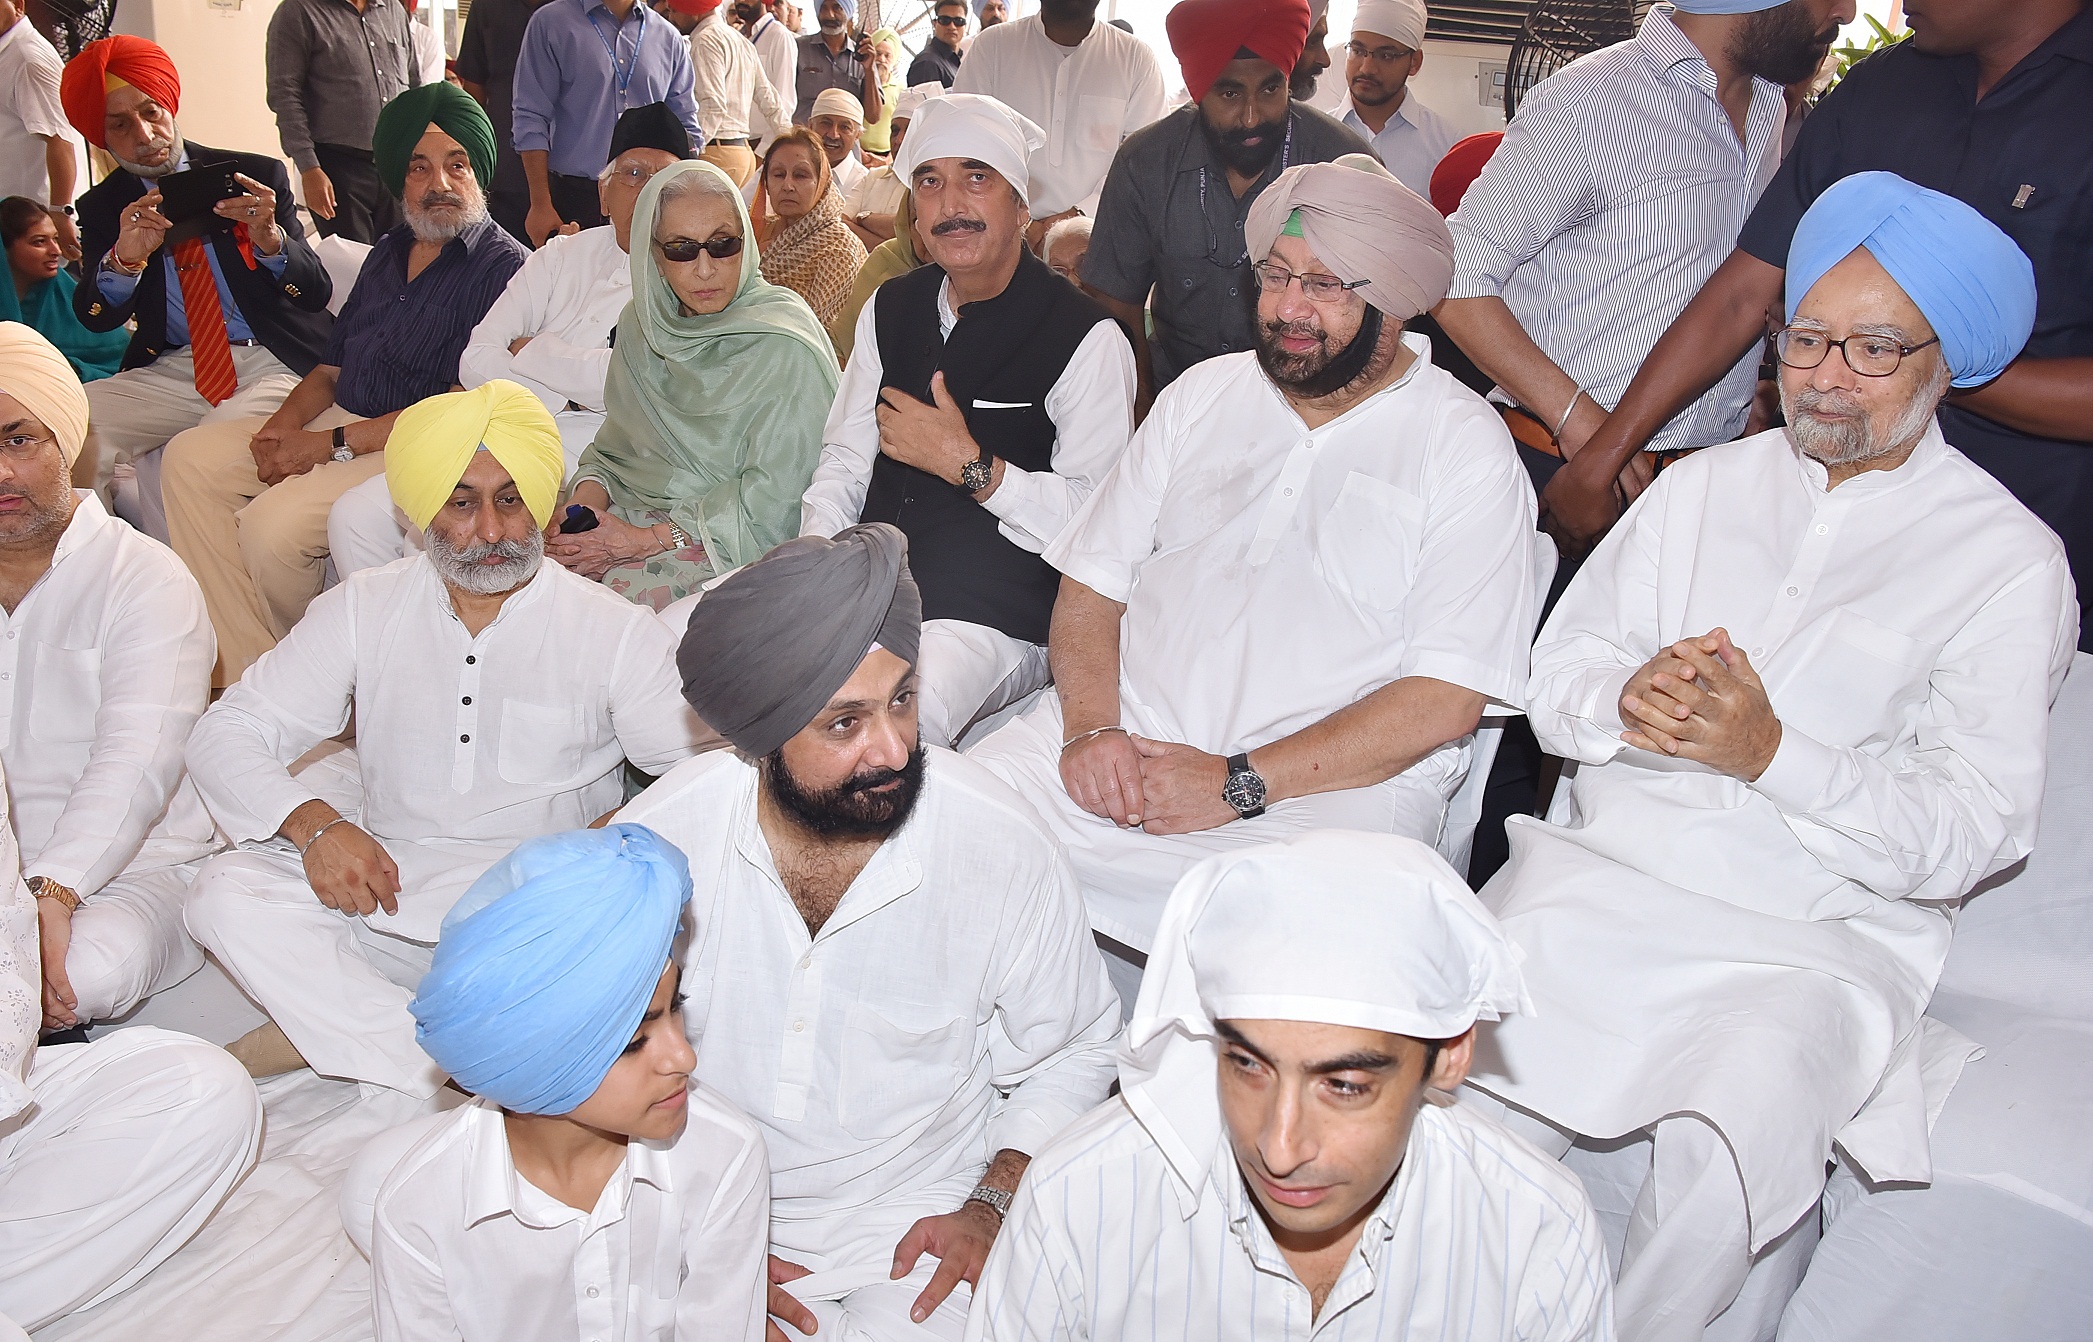 Dr Manmohan Singh, Ghulam Nabi, Sukhbir Badal join Capt. Amarinder at Rajamata’s bhog ceremony